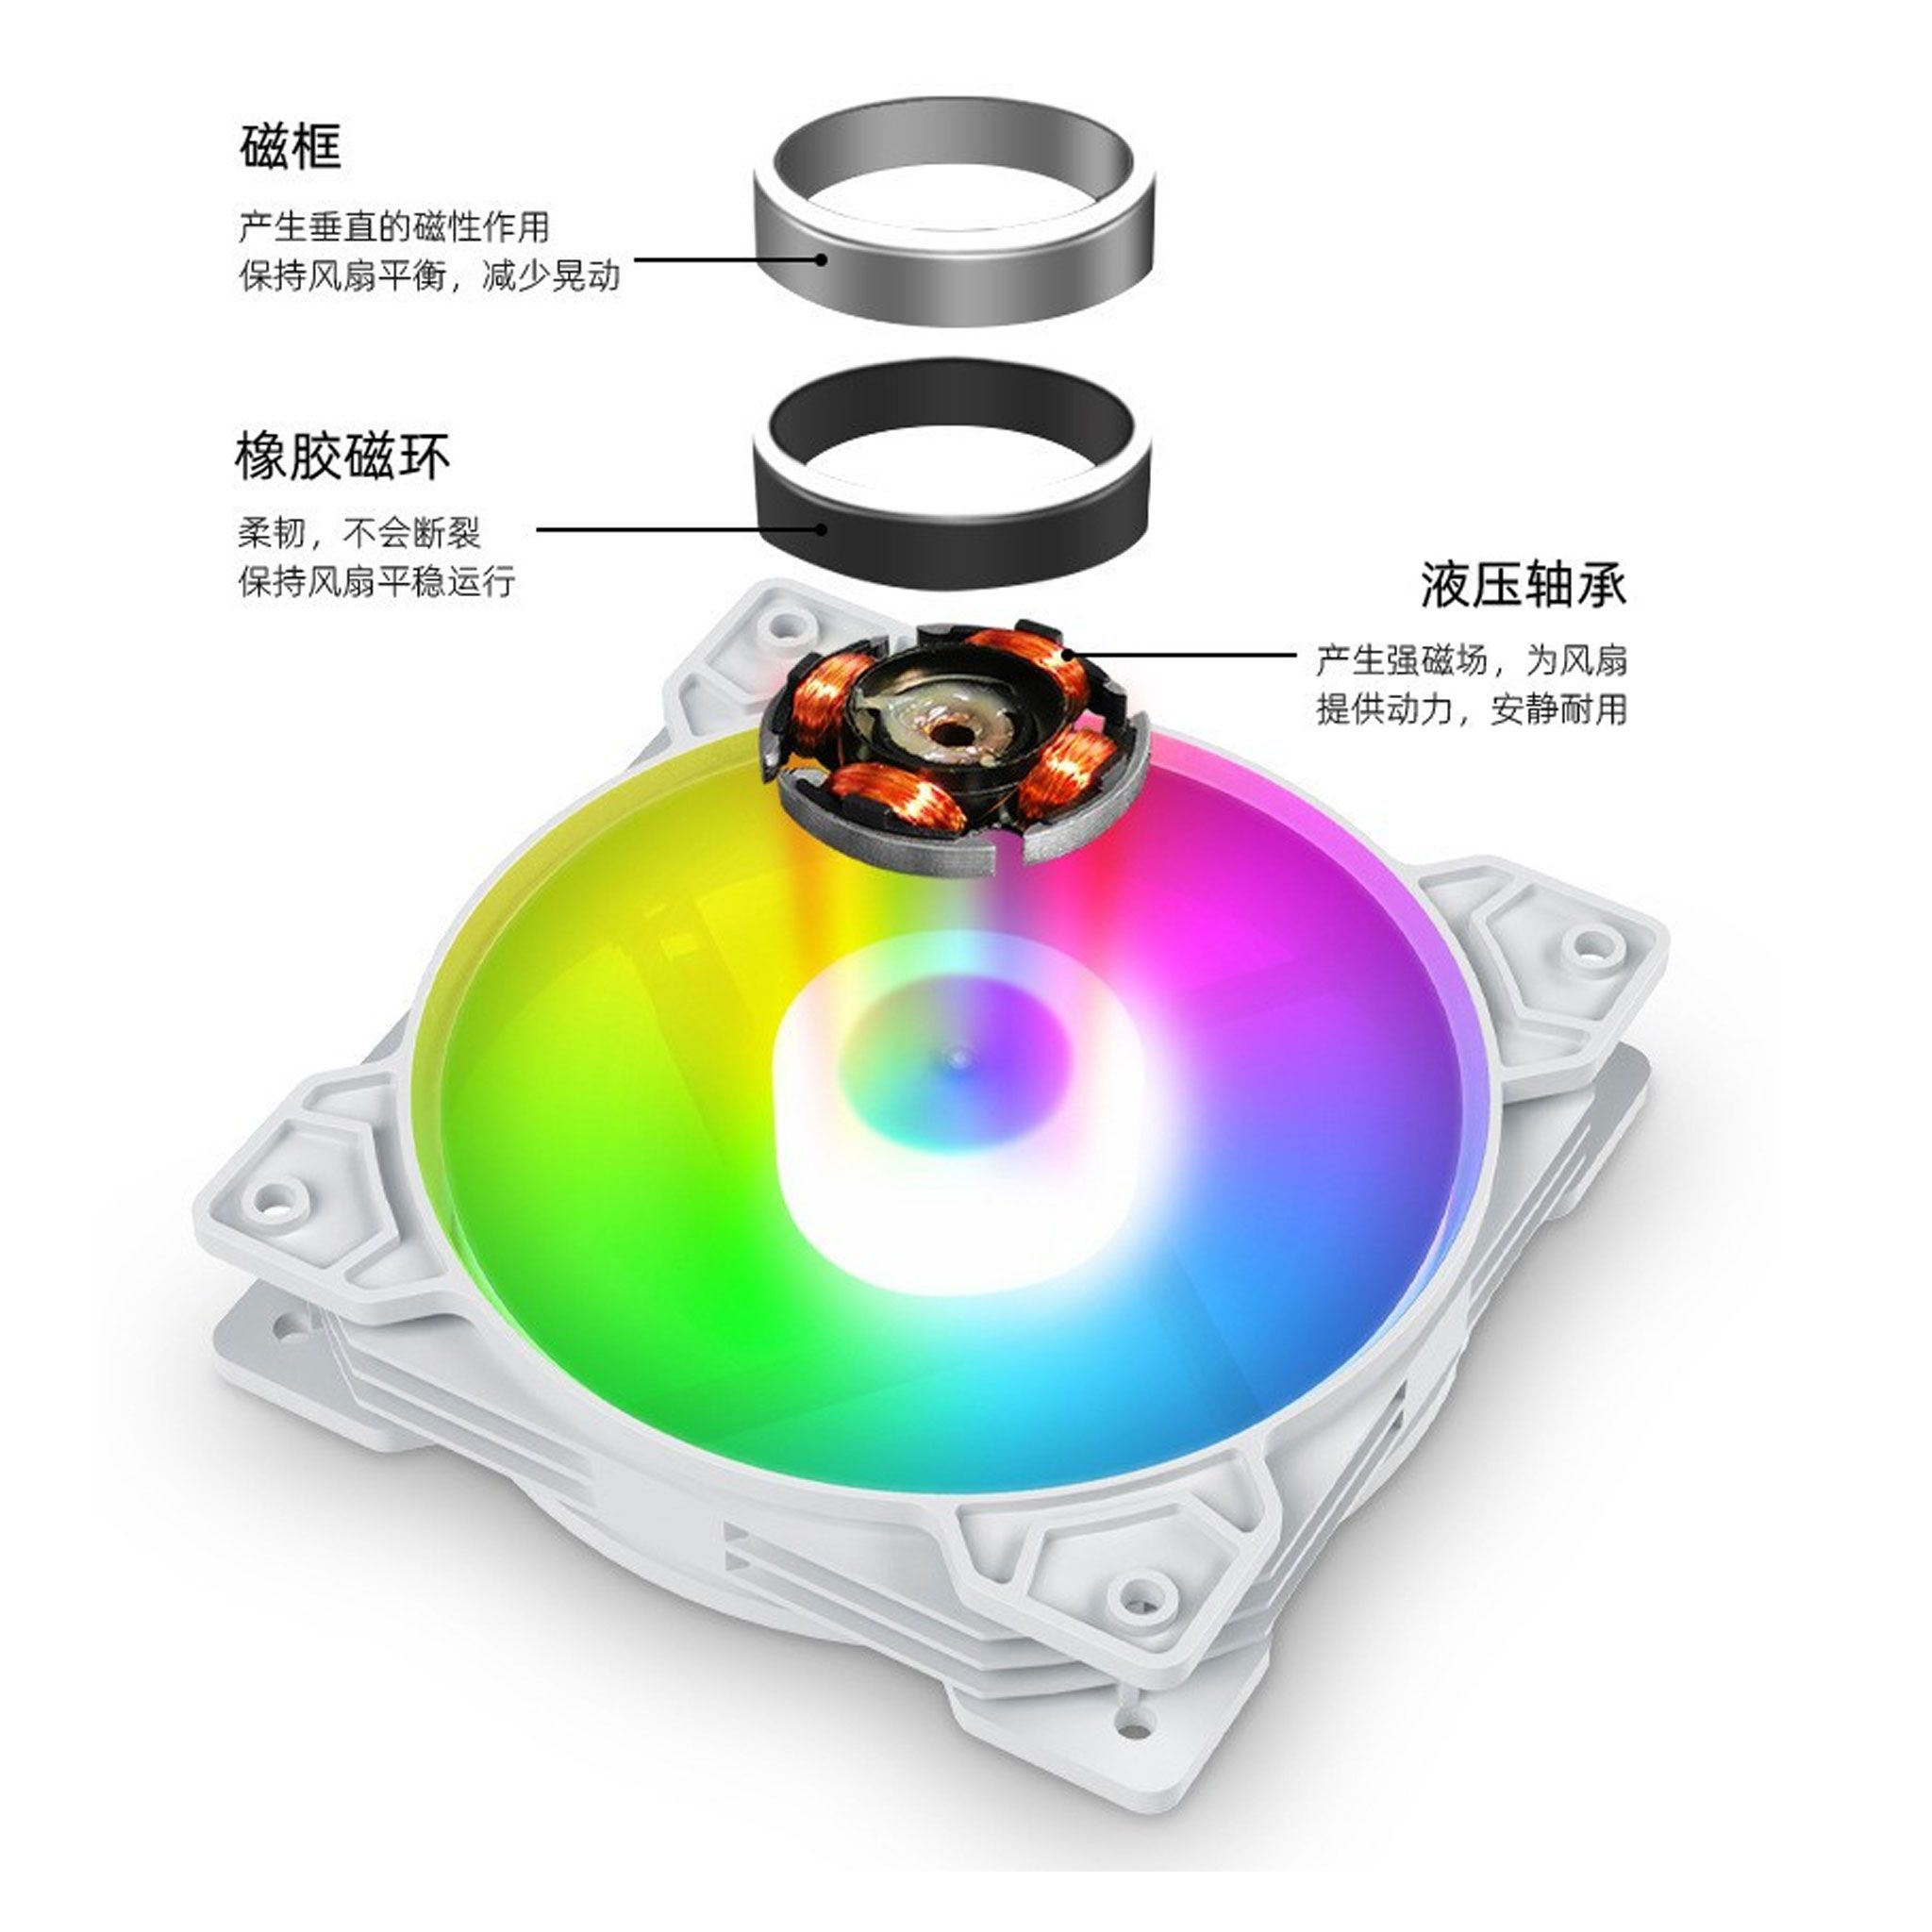 Fan Case CoolMoon K8 Led RGB Trắng (RGB Fixed, Không Cần Hub)